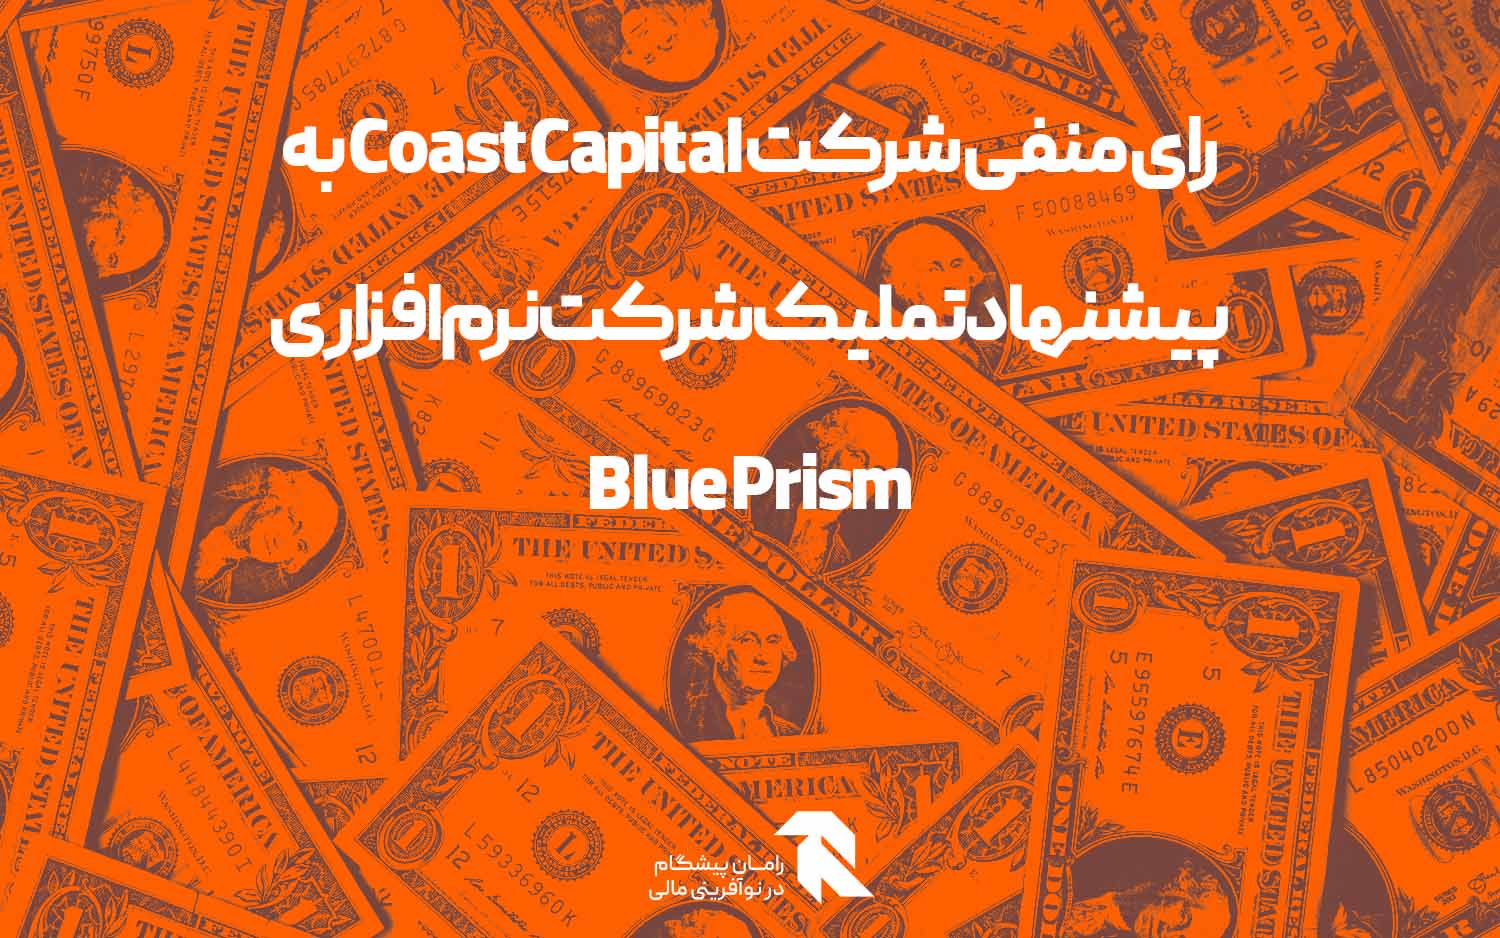 رای منفی شرکت Coast Capital به پیشنهاد تملیک شرکت نرم افزاری Blue Prism